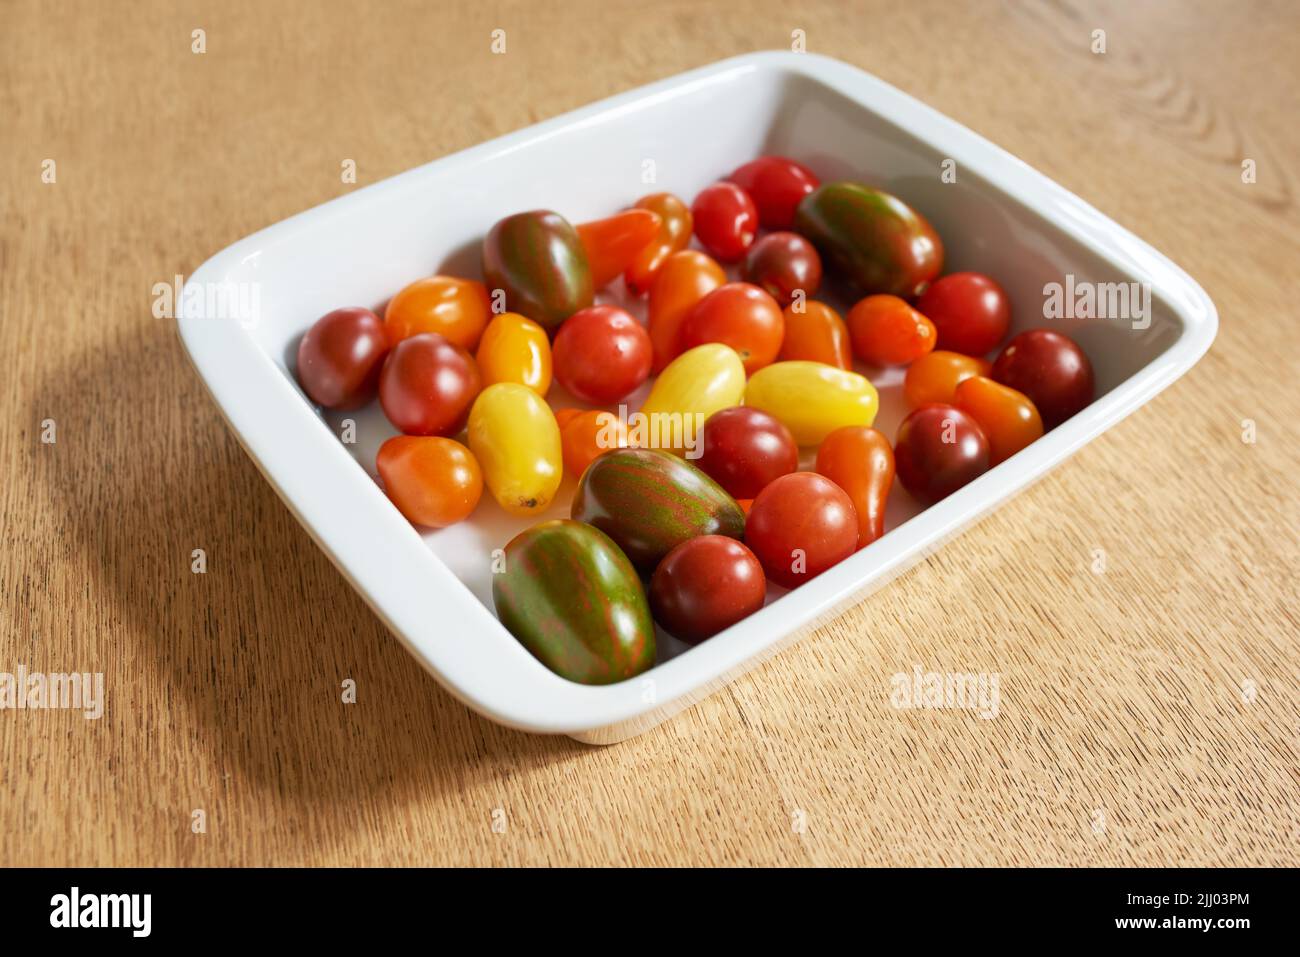 Essen. Nahaufnahme von roma- oder Kirschtomaten in einer Glasschüssel, serviert auf einem Holztisch für Ernährung, gesunde Salate und Ernährung. Frisches, biologisches Obst Stockfoto